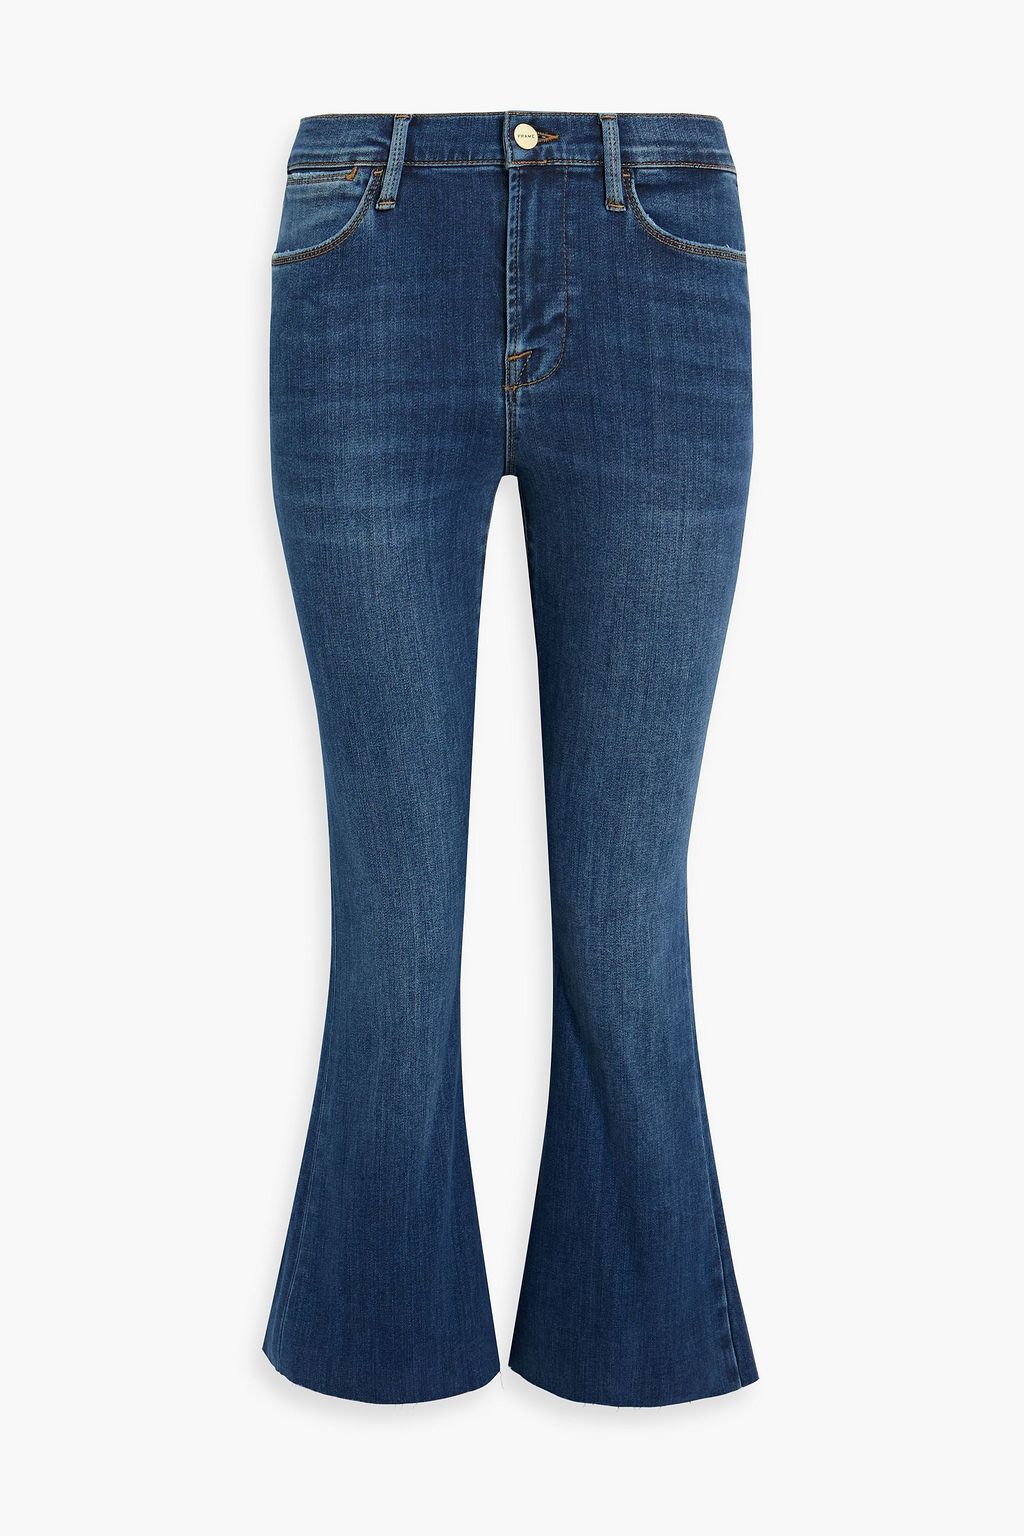 Укороченные расклешенные джинсы Le High с высокой посадкой FRAME, синий джинсы укороченные широкие frame le palazzo с высокой посадкой kerry